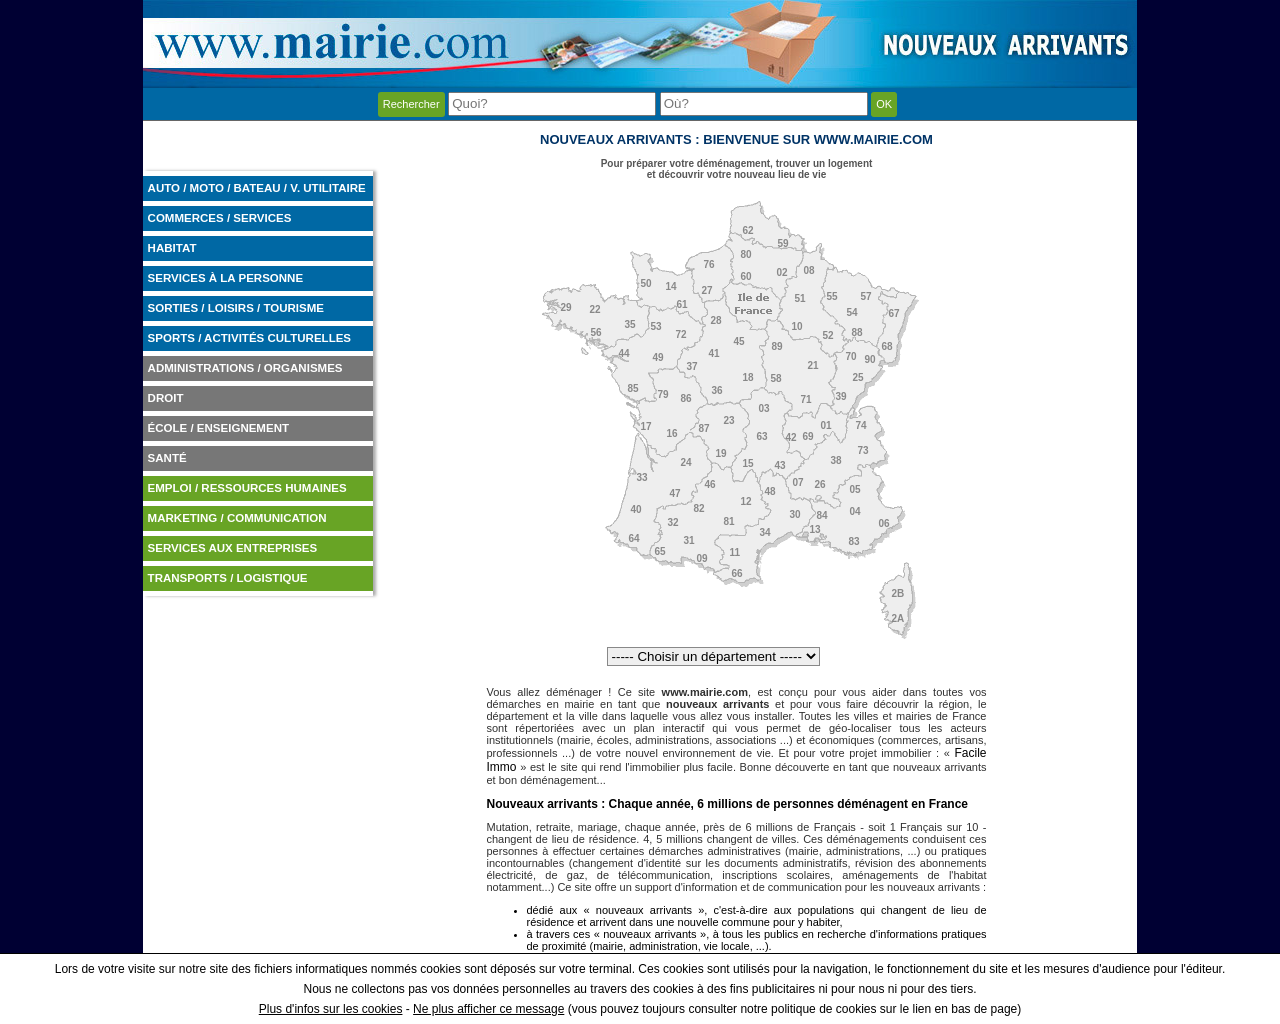 www.mairie.com